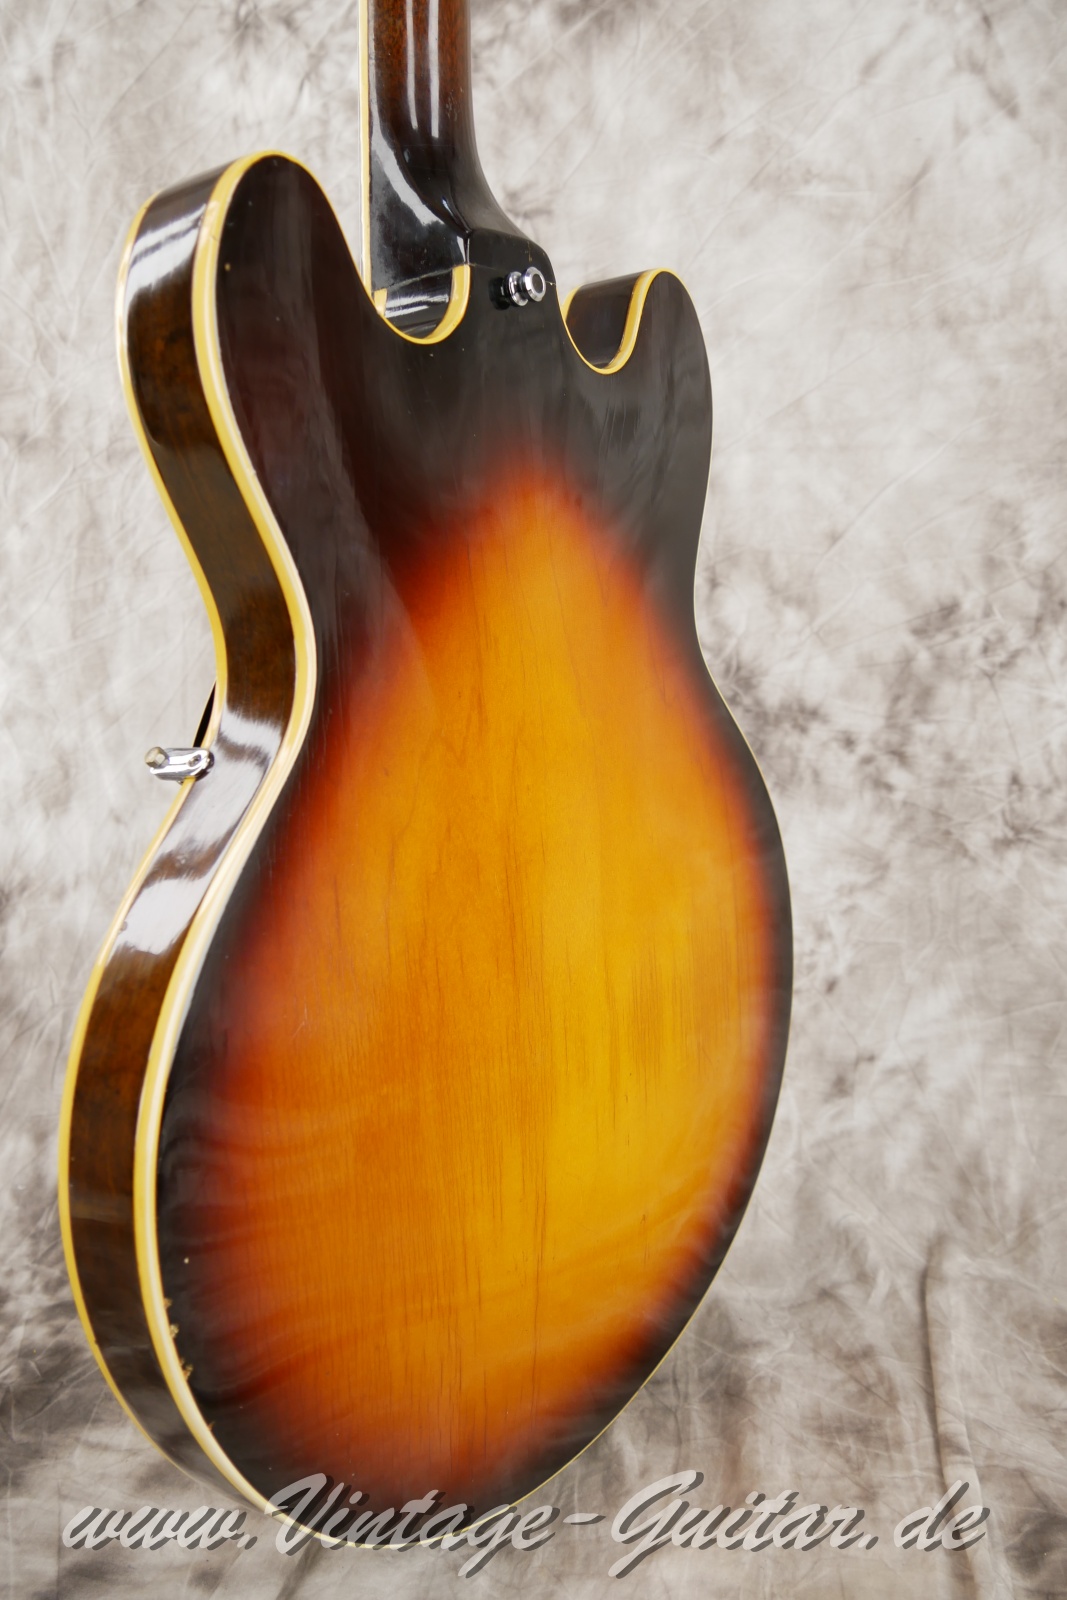 Gibson-ES-335TD-sunburst-1967-013.JPG